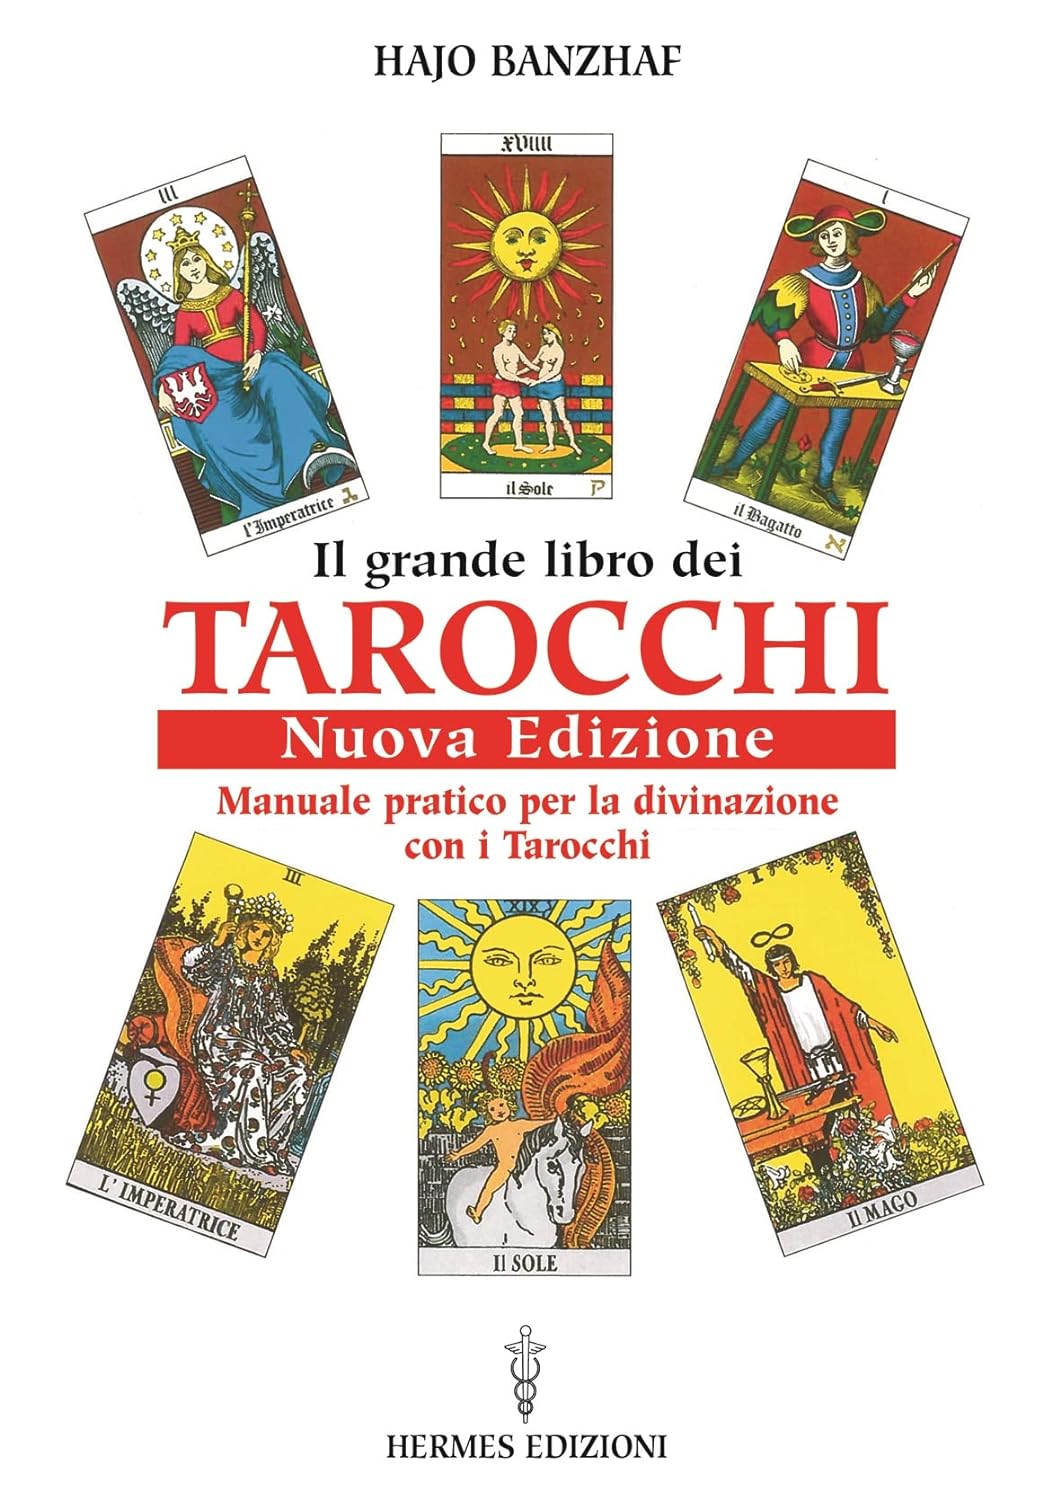 Il Grande Libro dei Tarocchi - Hajo Banzhaf